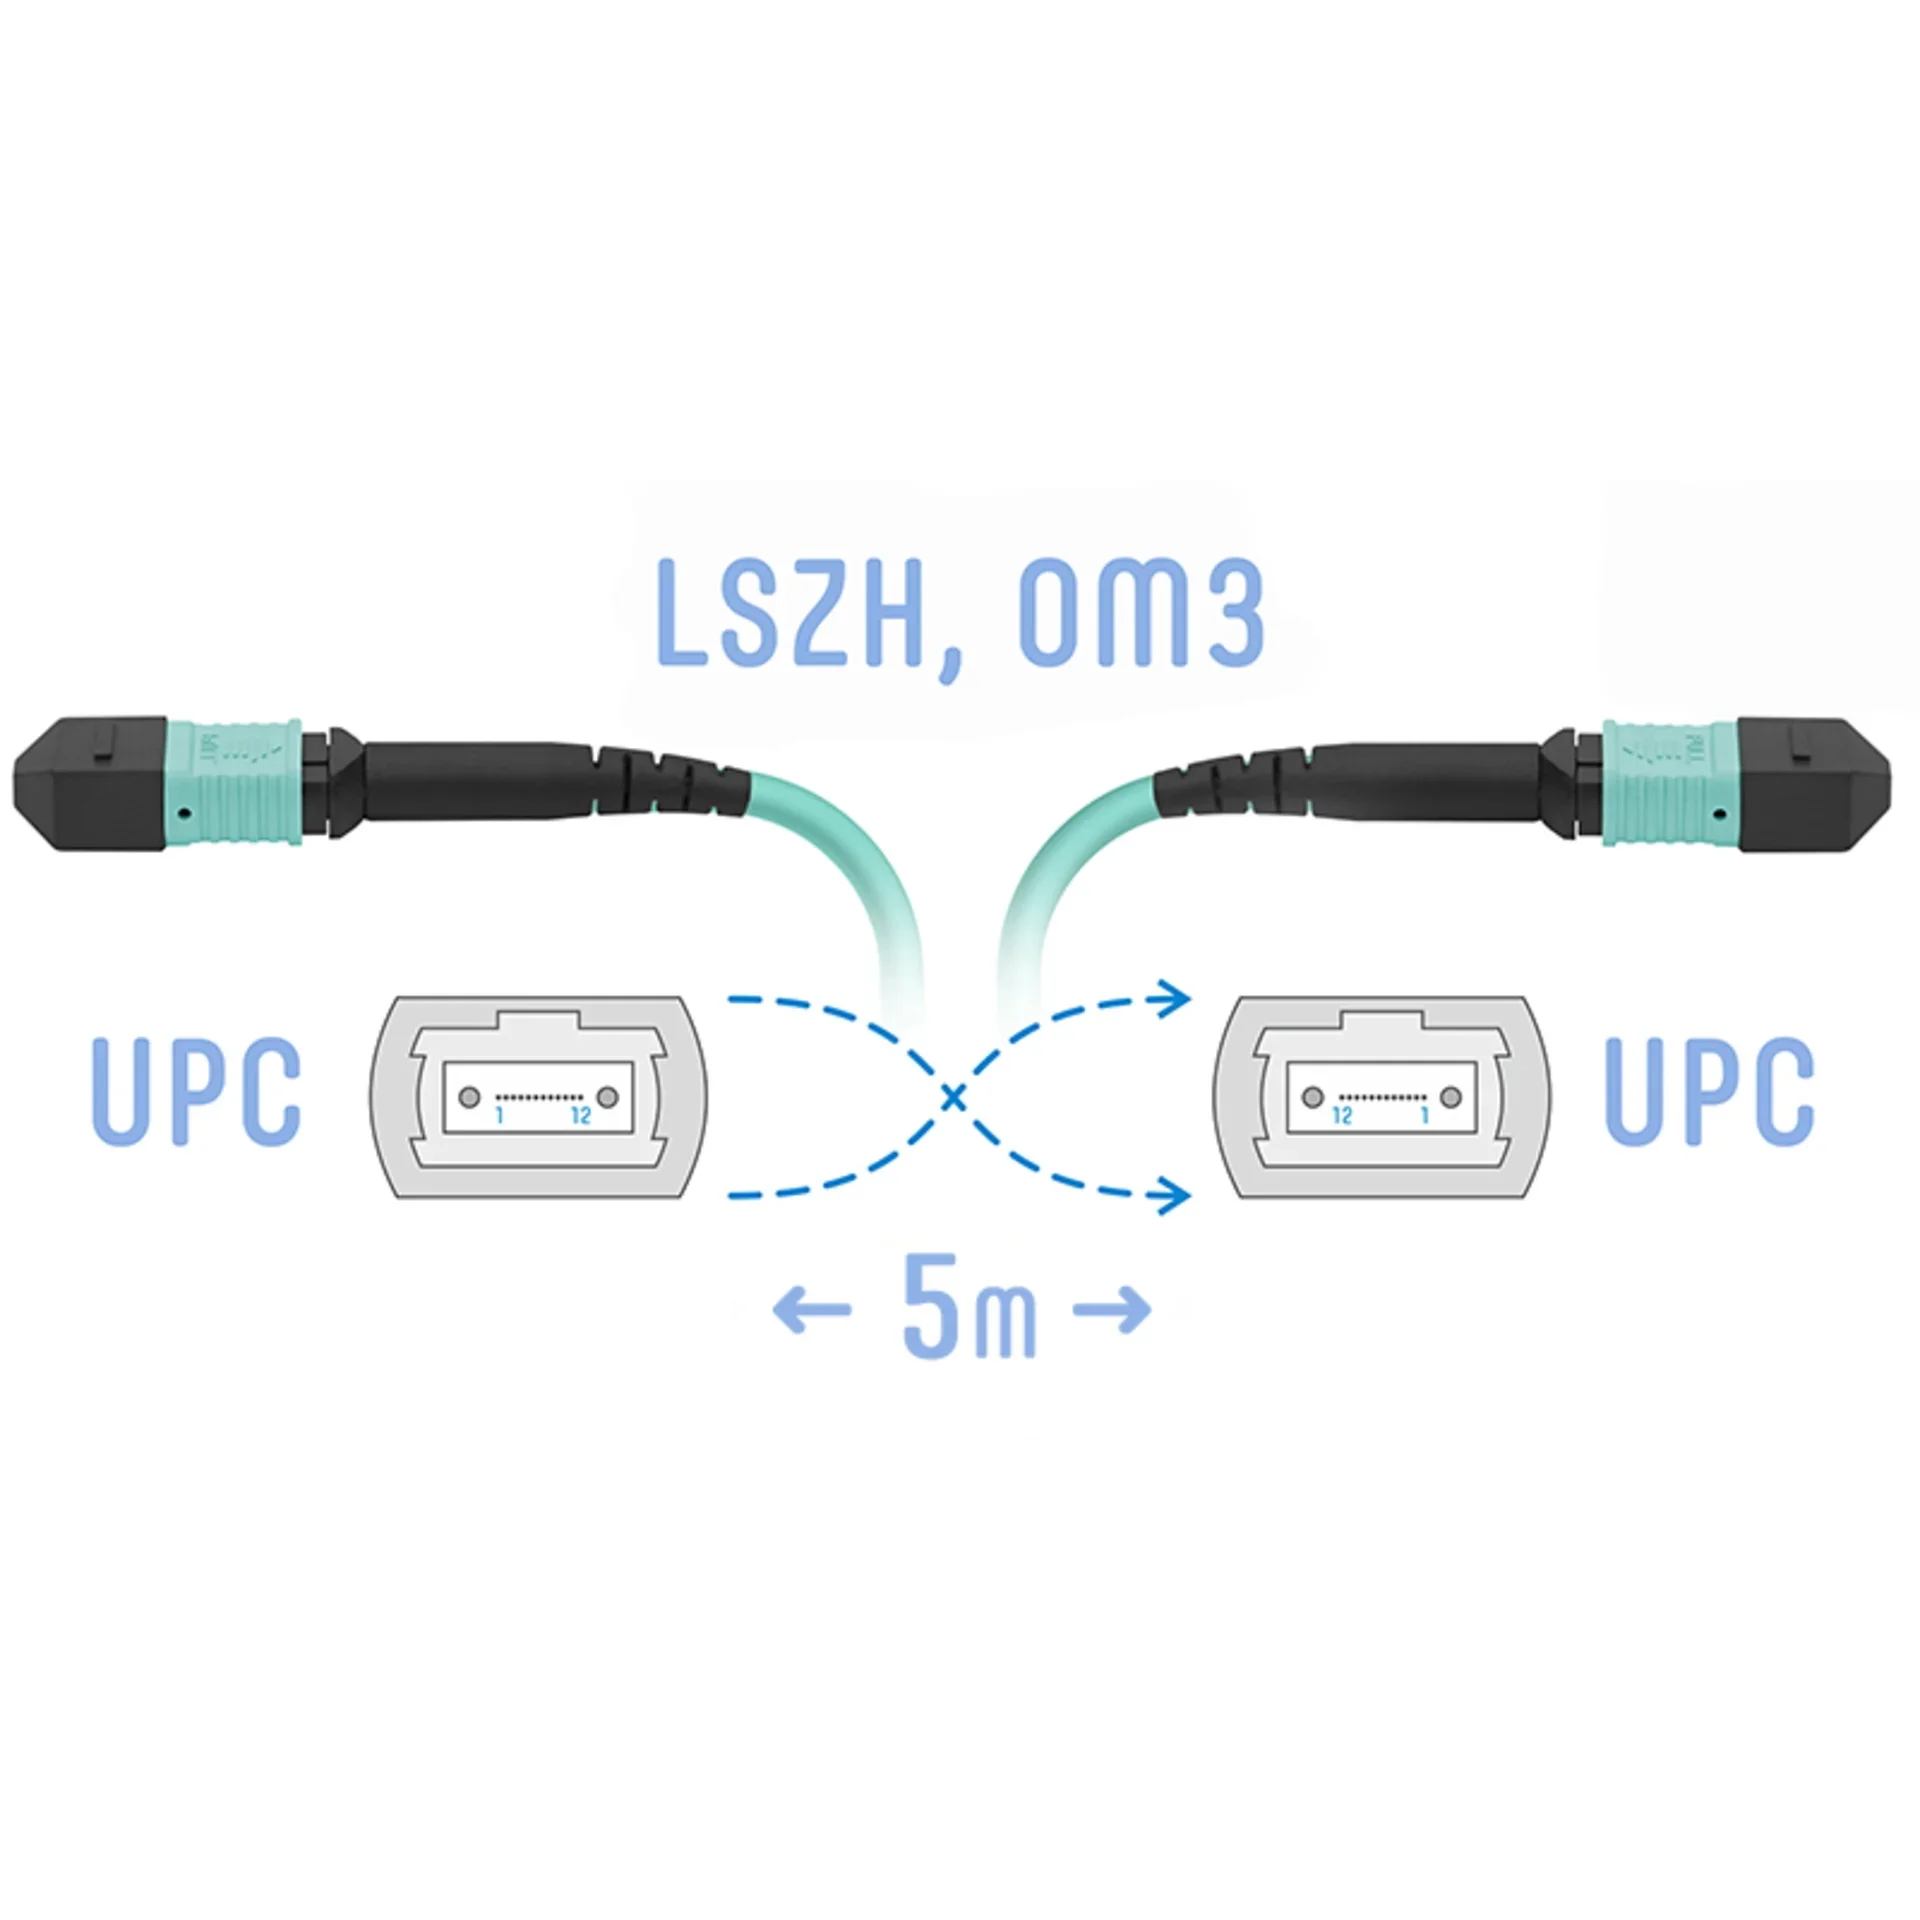 SNR-PC-MPO/UPC-MPO/UPC-FF-MM-12F-5m - Оптический патчкорд MPO/UPC - MPO/UPС, FF (Female / Female), кроссовый, MM, 12 волокон диаметром 50/125 (OM3), 5 метров купить в Казани 	Оптический разъем MPO (Multi-fiber push-on) является разумной альтернативой для кабельной инфрастру